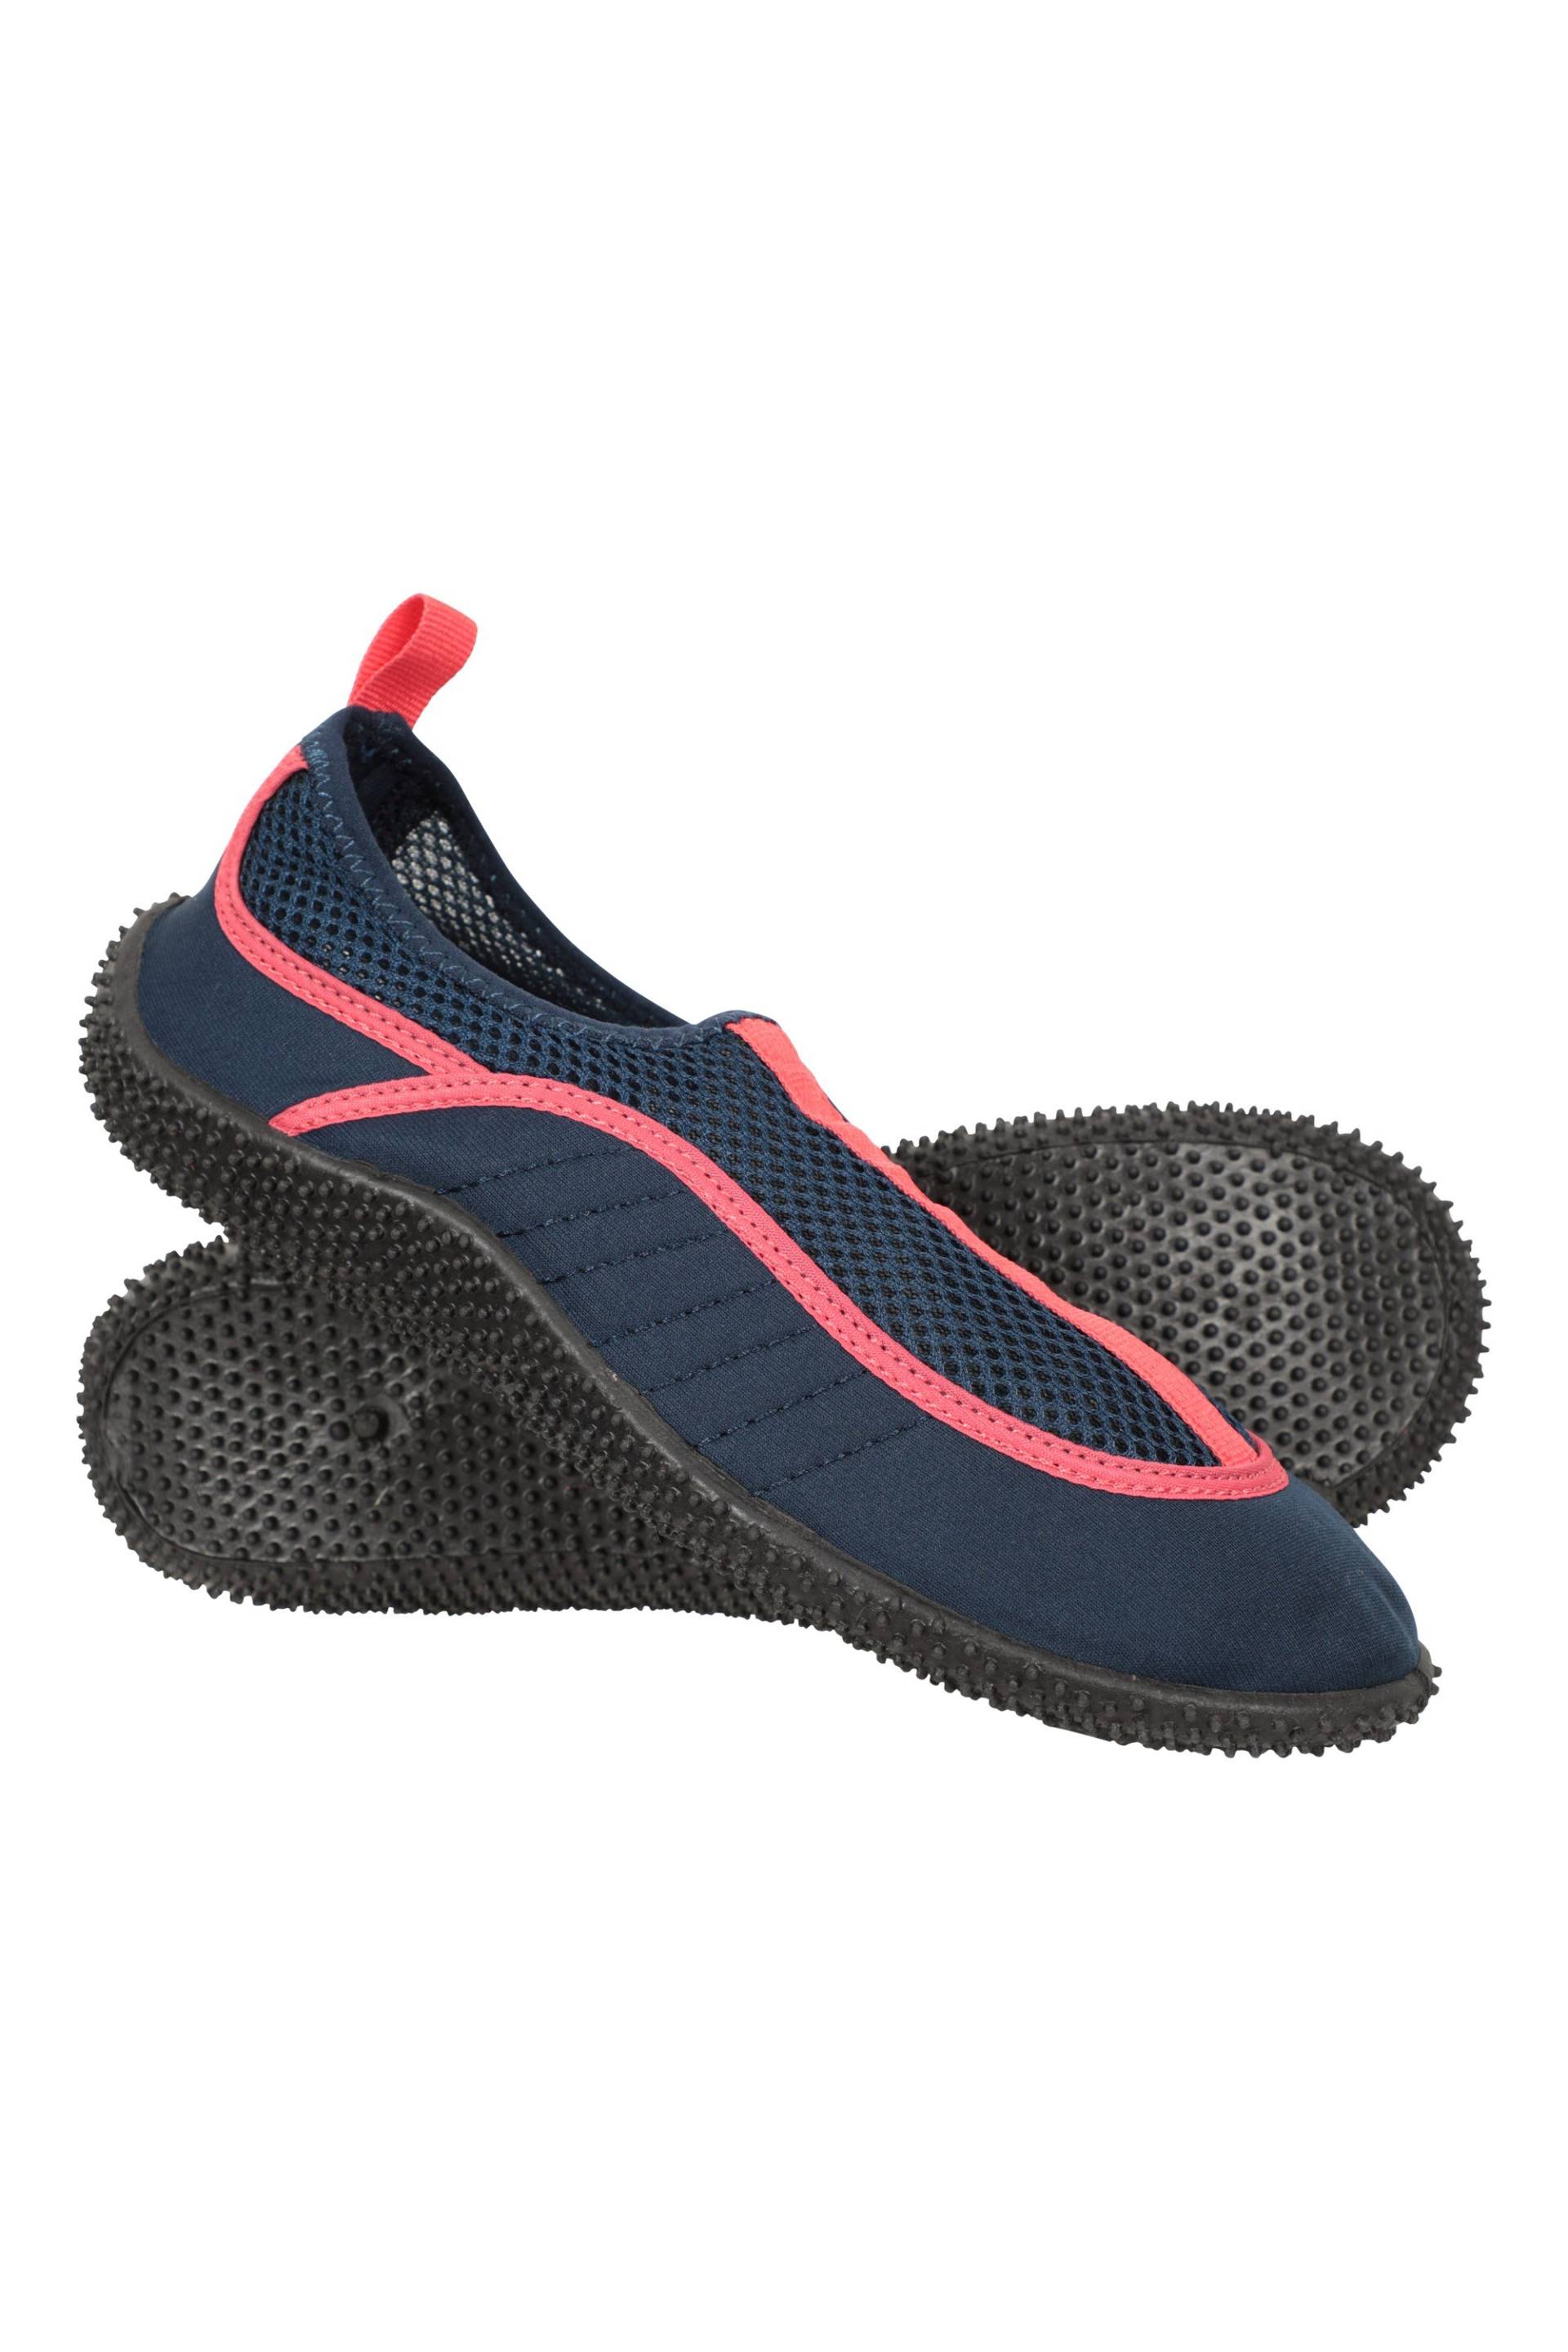 Bermuda Damen Aqua-Schuhe - Marineblau von Mountain Warehouse